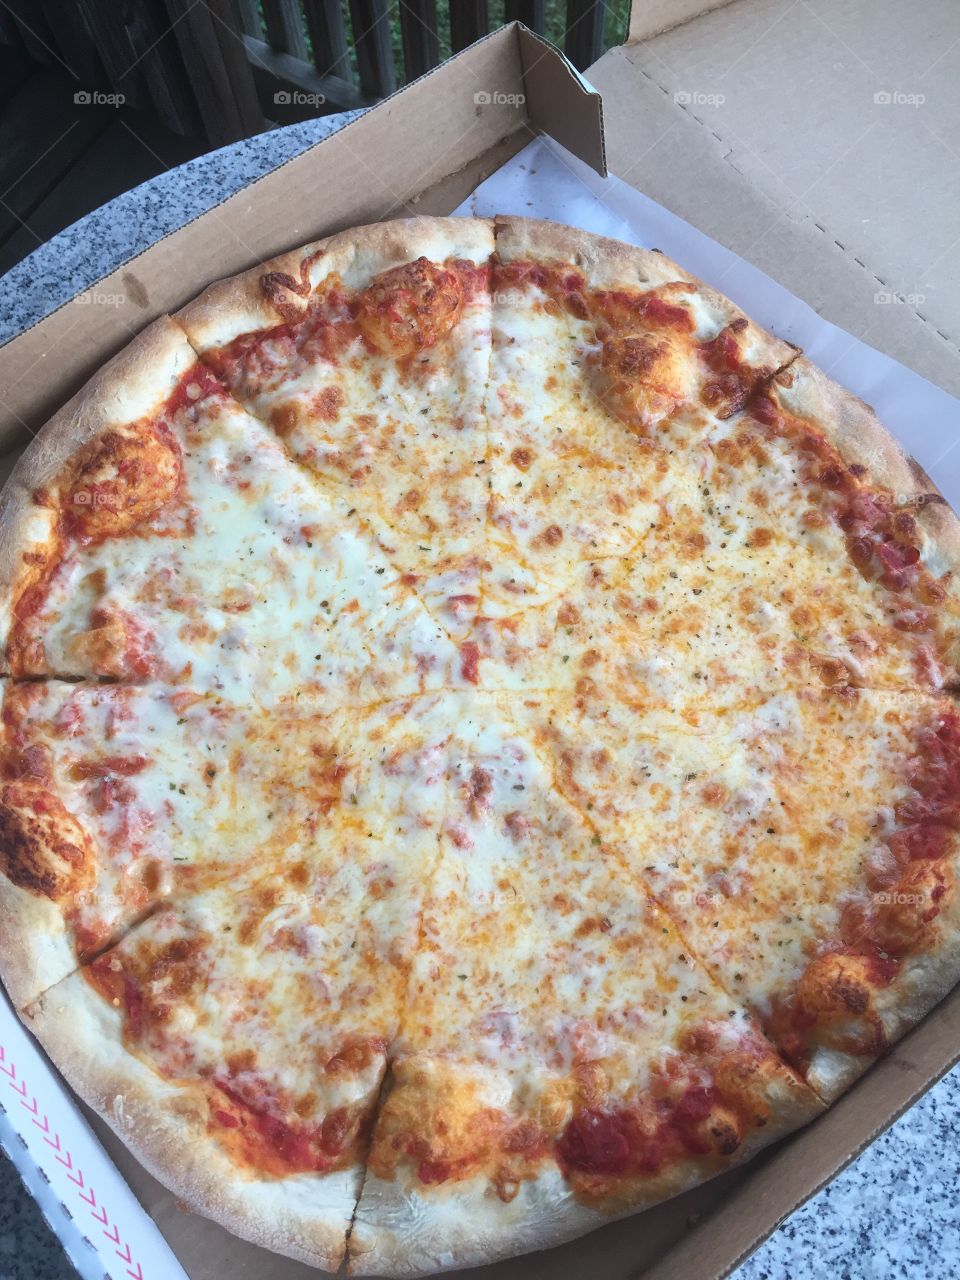 Pizza love!